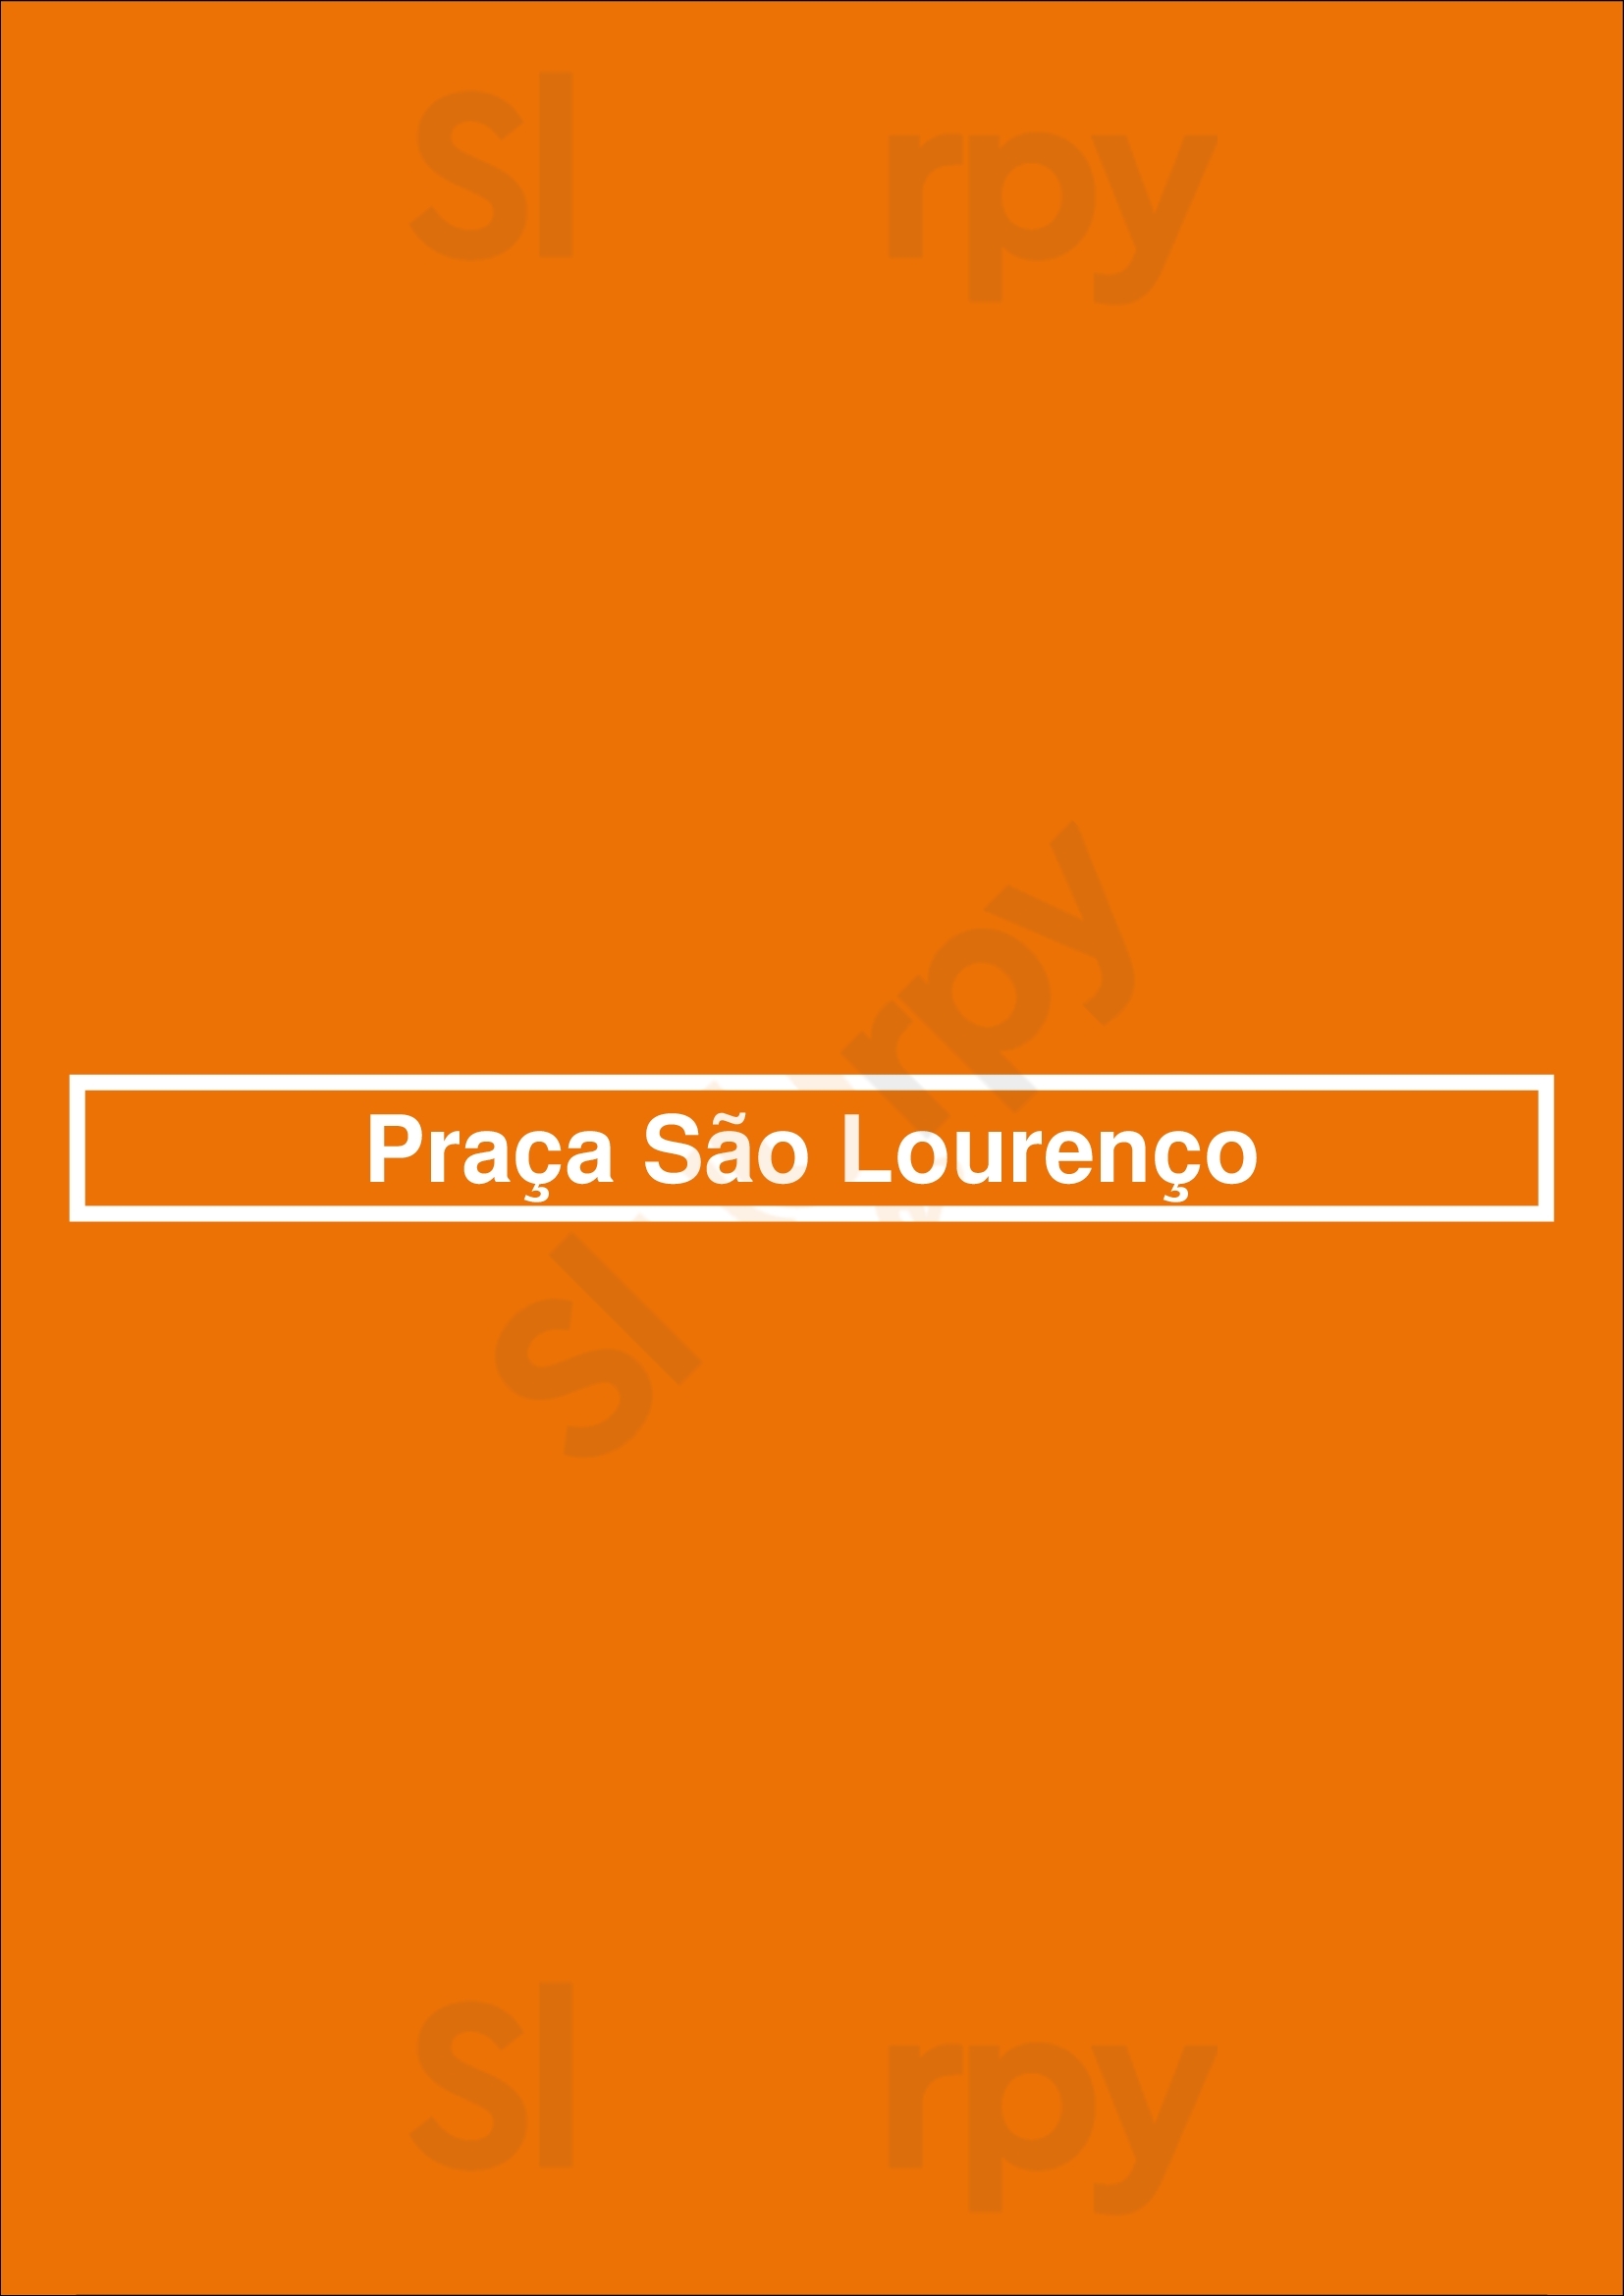 Praça São Lourenço São Paulo Menu - 1